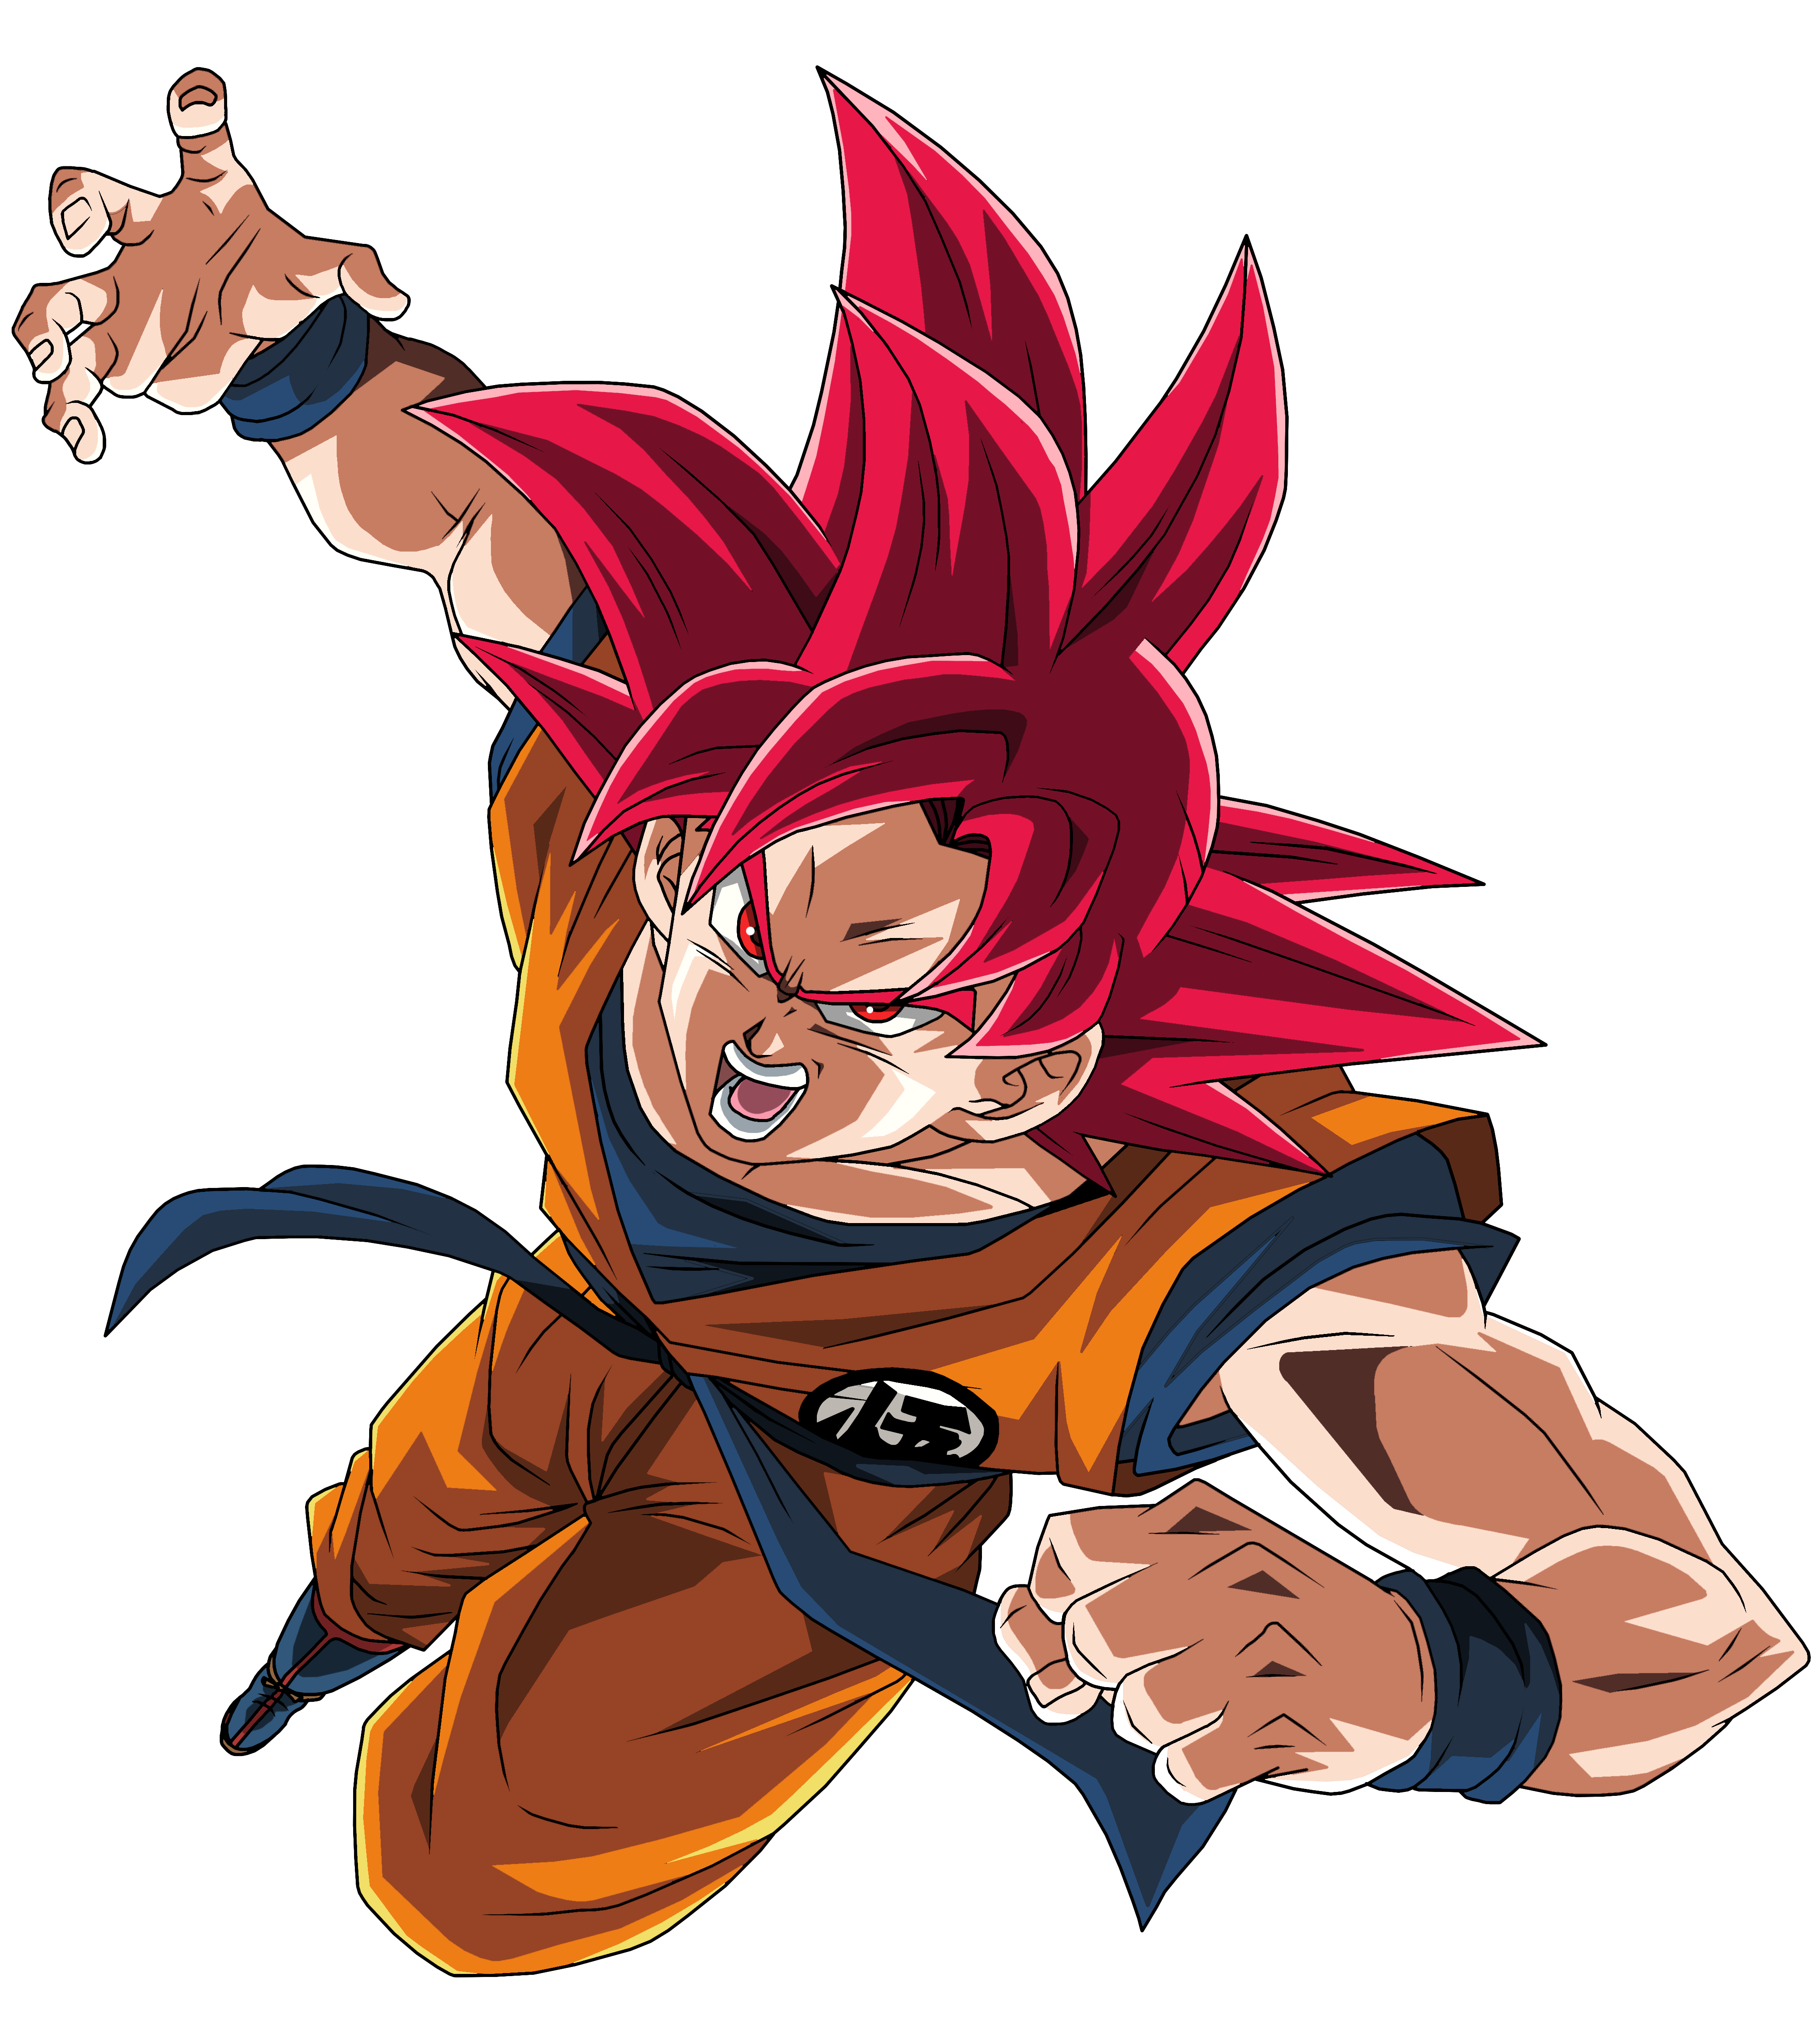 Super Saiyan God Goku by BrusselTheSaiyan on DeviantArt